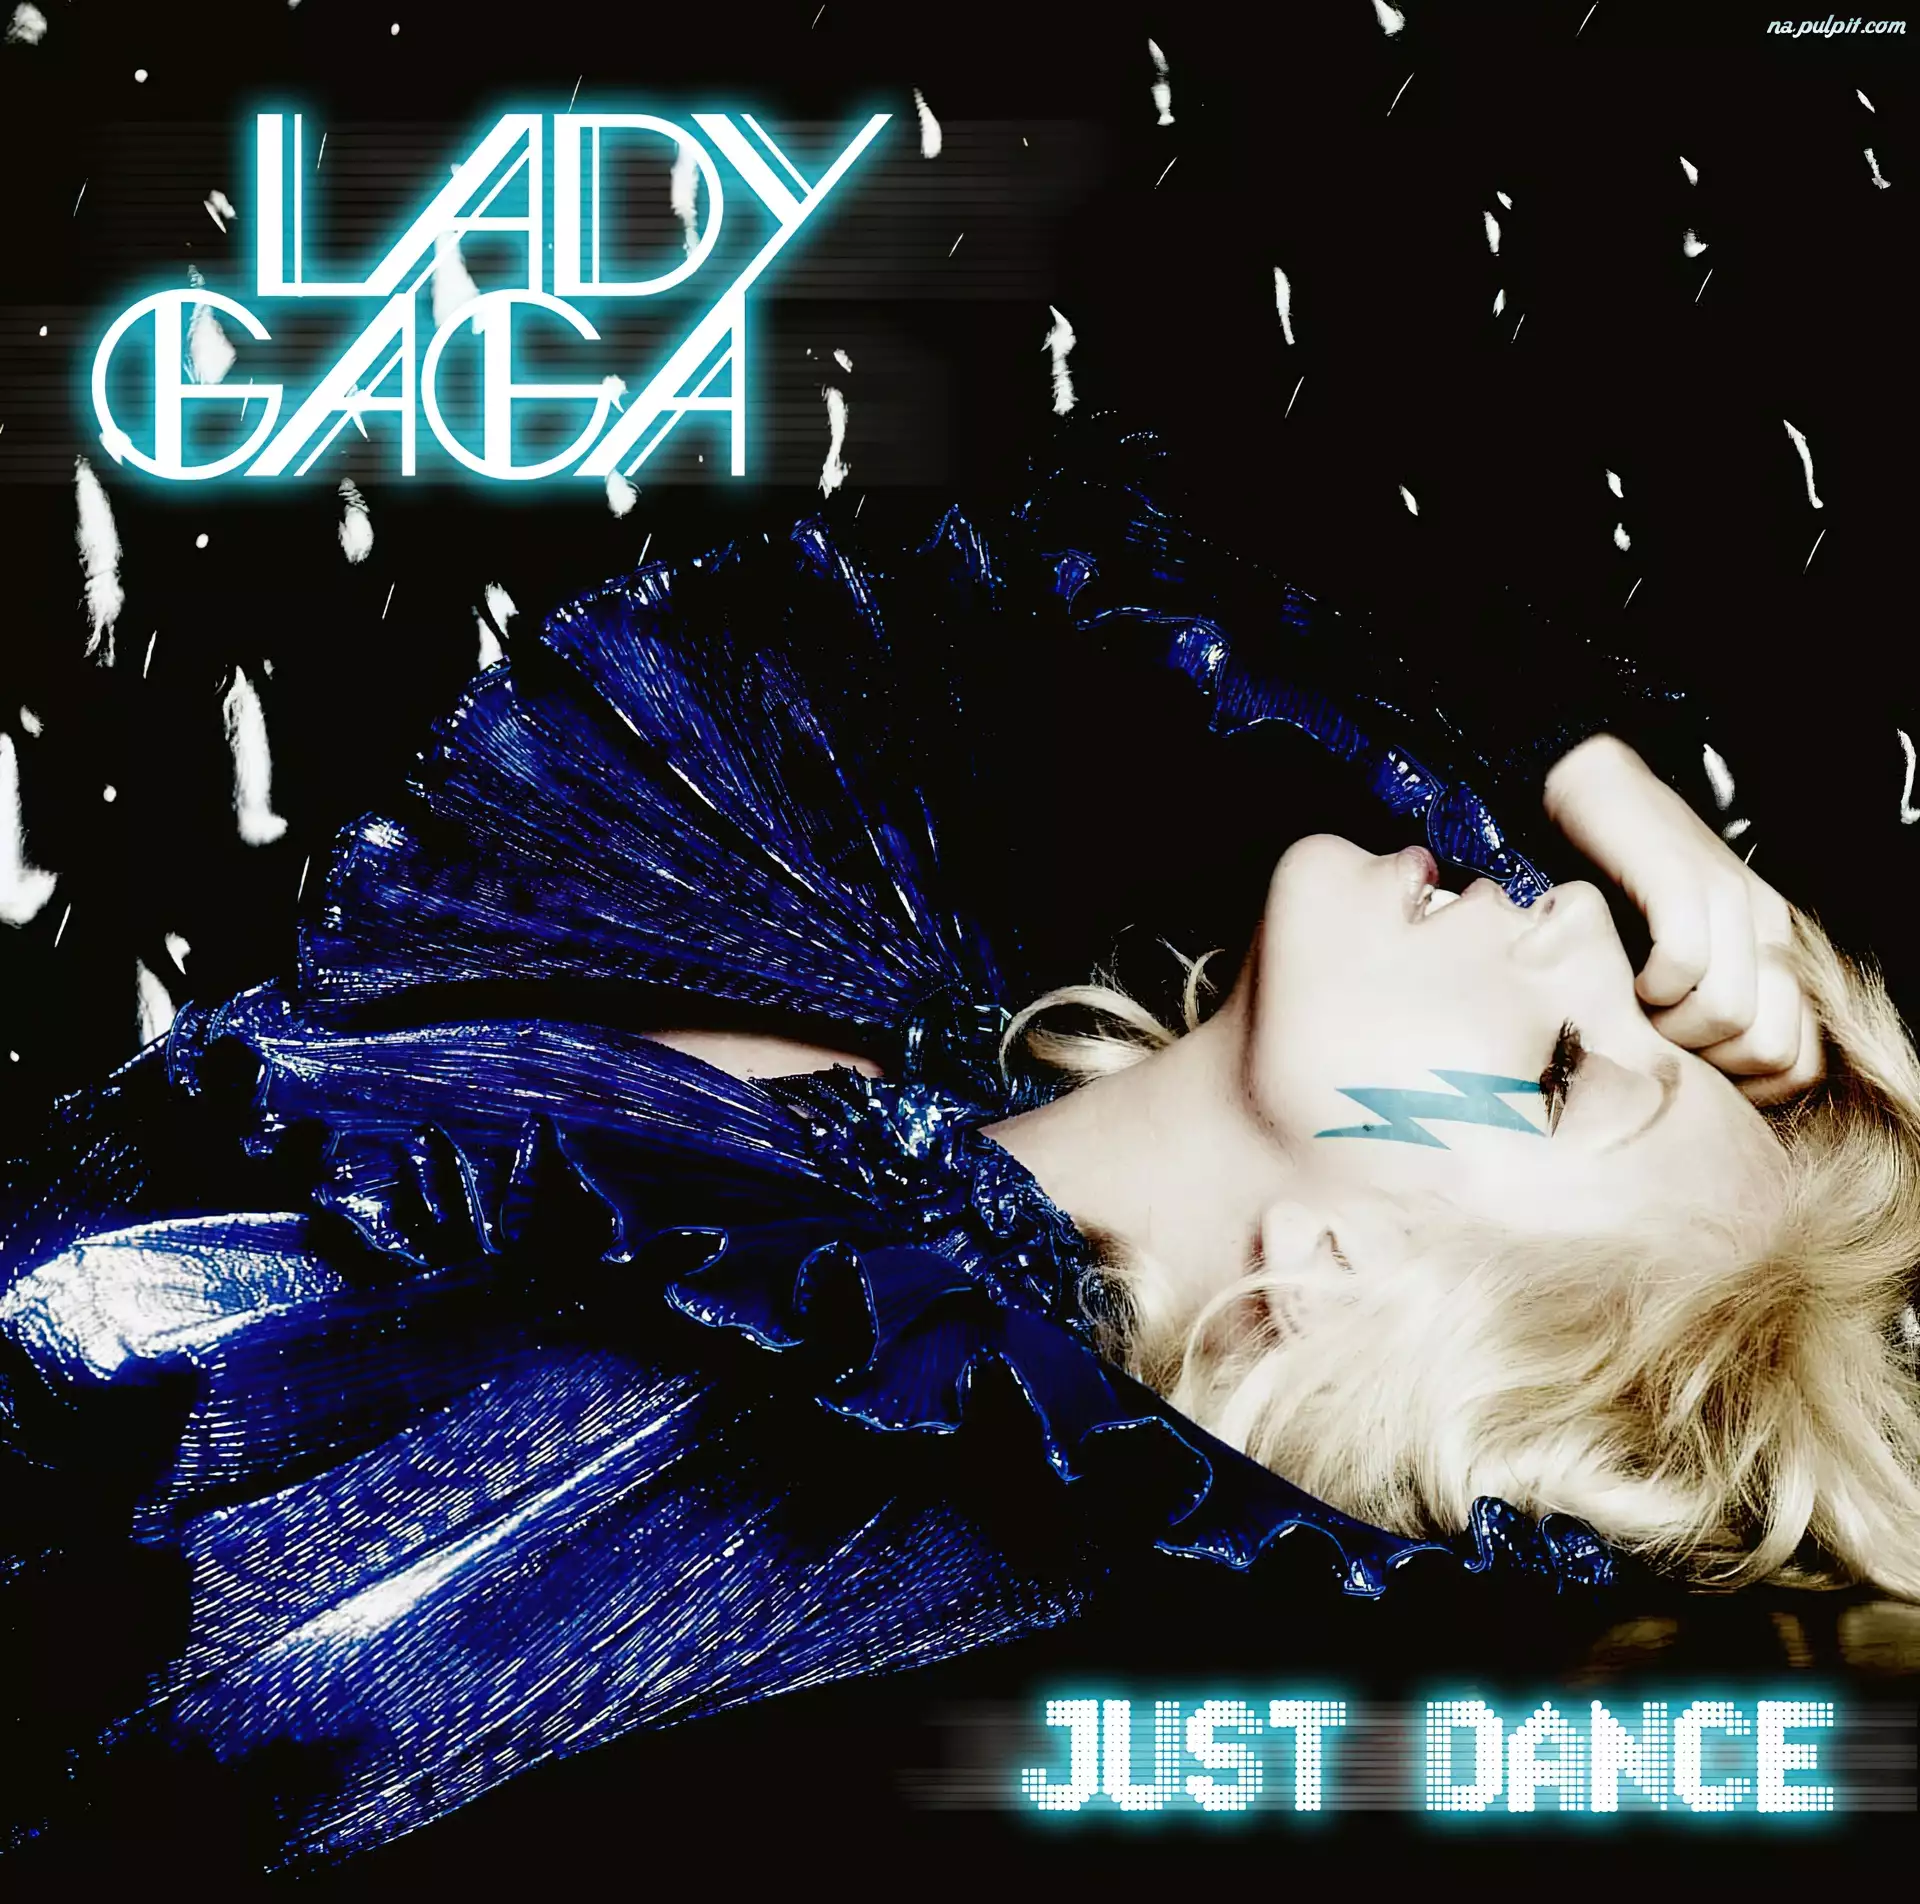 Just dance, Lady Gaga